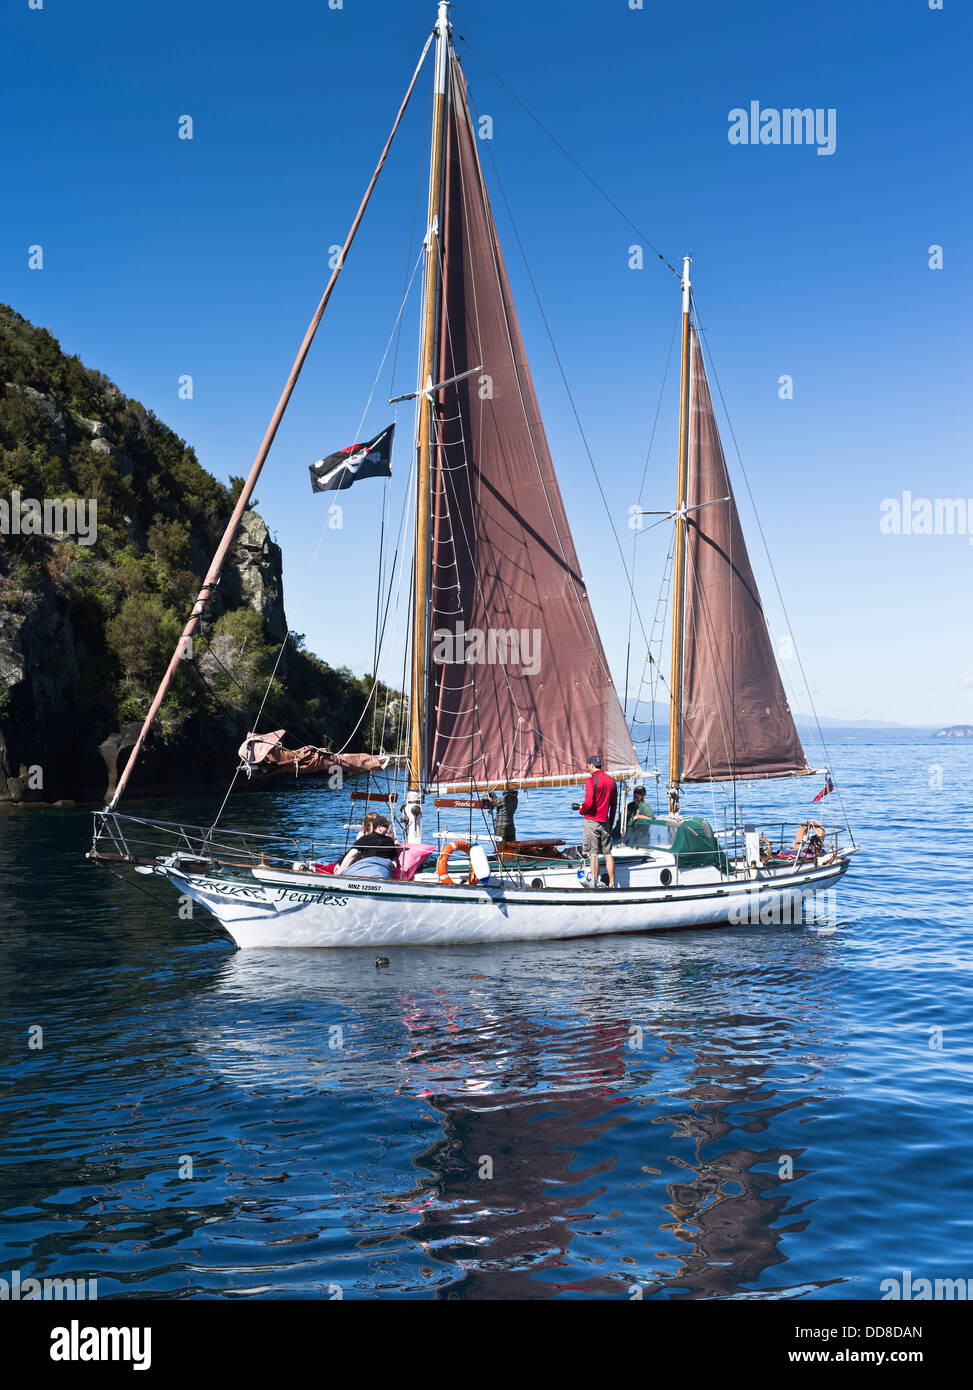 Dh intrepido imbarcazione a vela lago Taupo New Zealand Yacht viaggio turistico di turisti Foto Stock